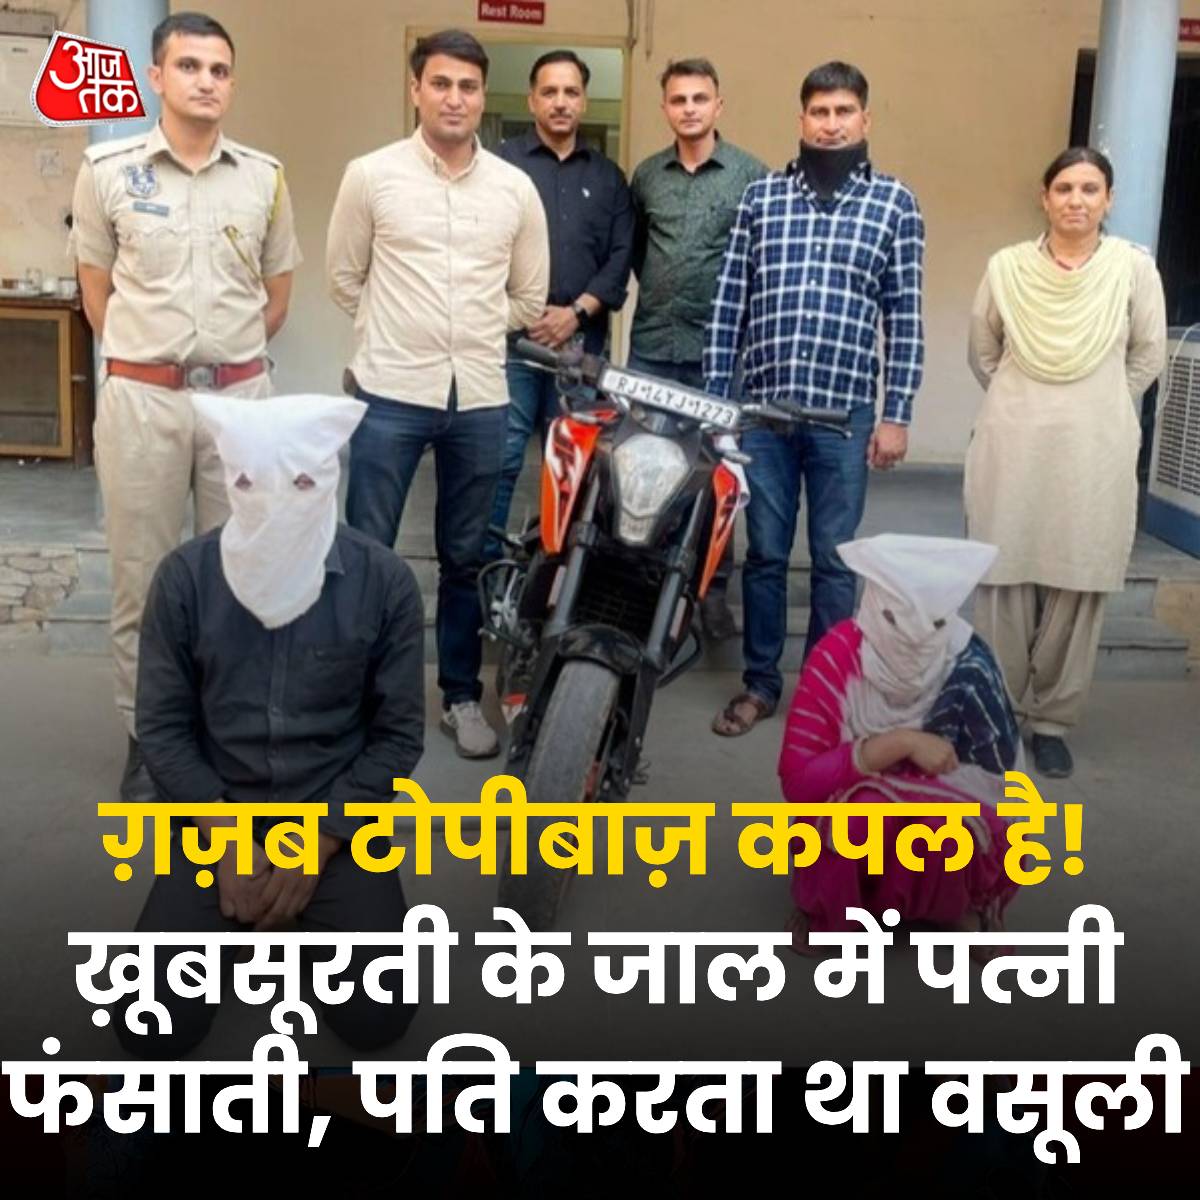 KTM वाला कपल...खूबसूरती के जाल में ड्राइवरों को फंसाती थी पत्नी, फिर पति वसूलता था मोटी रकम

राजस्थान के जयपुर में हाइवे पर ट्रक चालकों को अपनी खूबसूरती के जाल में फंसा लूट करने वाली शातिर महिला को उसके पति के साथ पुलिस ने गिरफ्तार किया है. दोनों बिहार के रहने वाले हैं लेकिन…